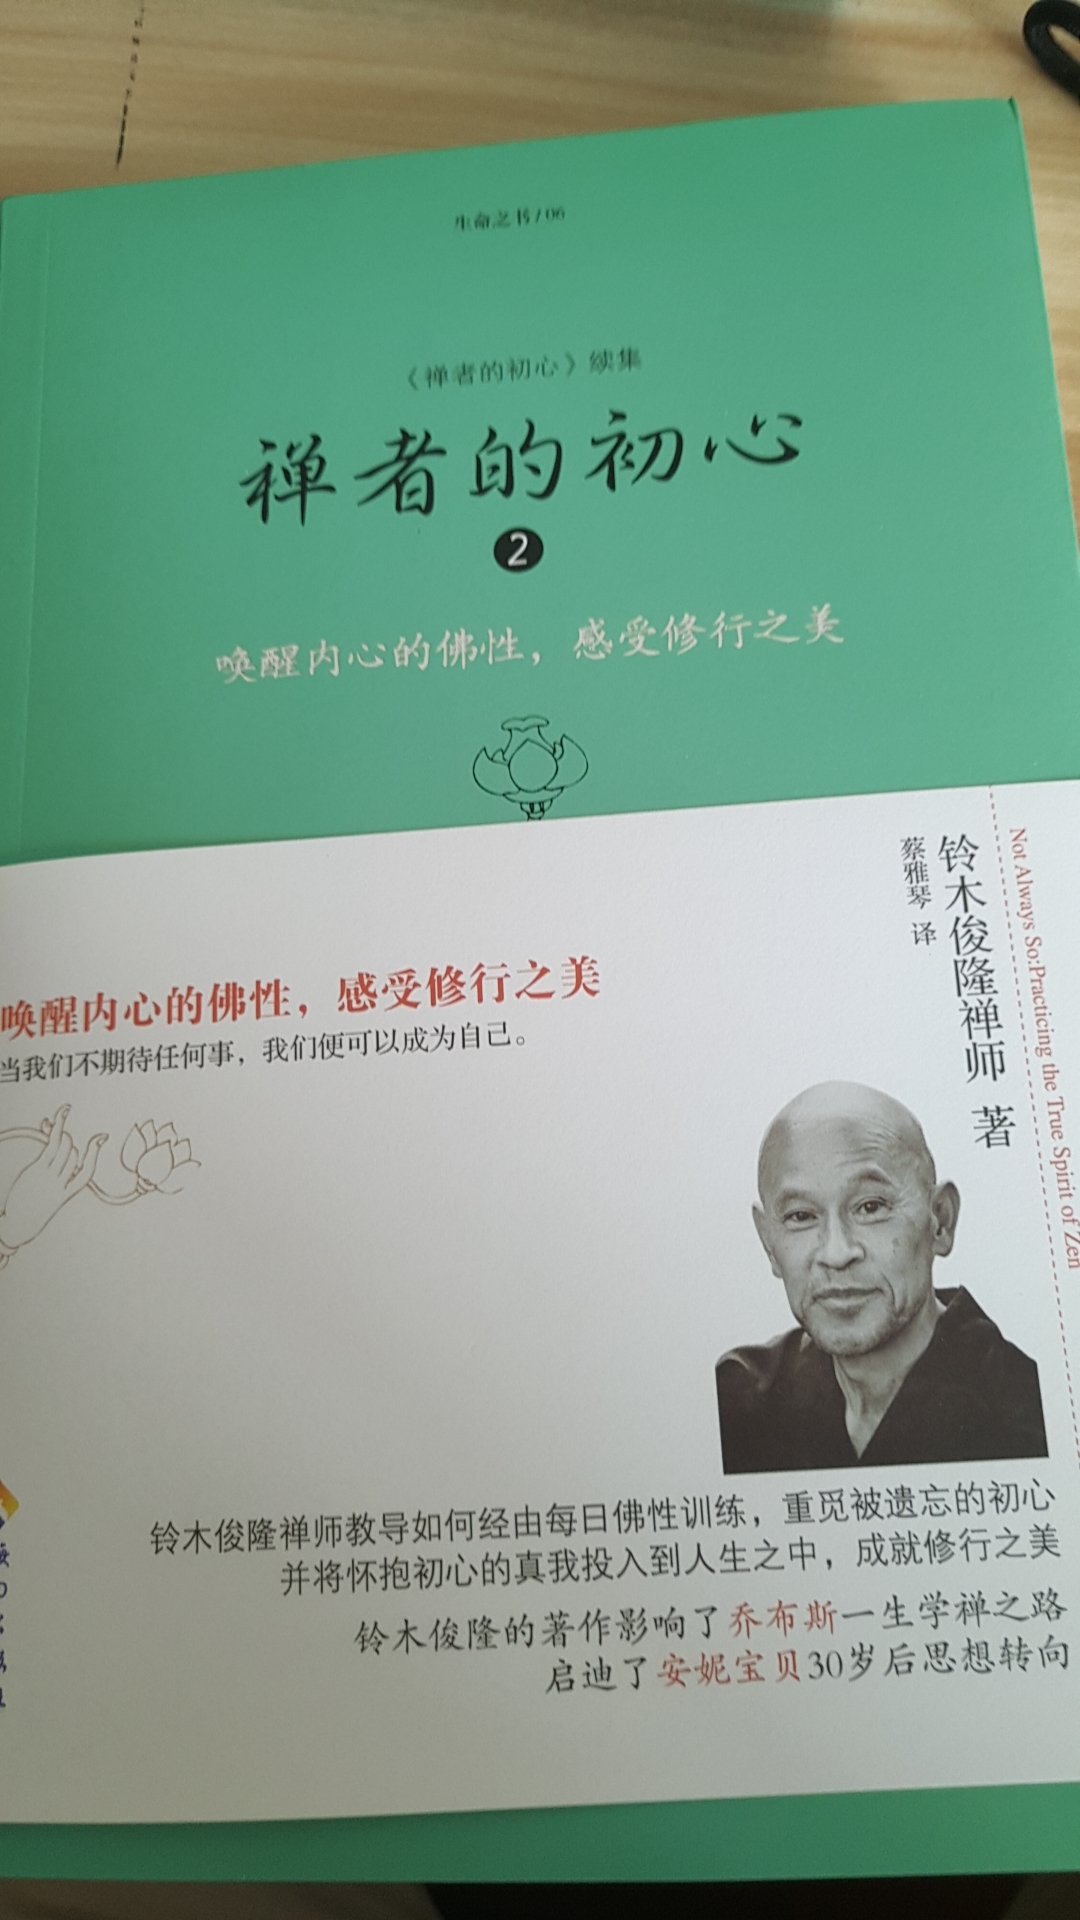 买过禅者的初心第一册，这次买了第二册，感受得到日本僧人那种独特的安静和淡泊。印刷精美，文字通俗易懂，很不错很不错